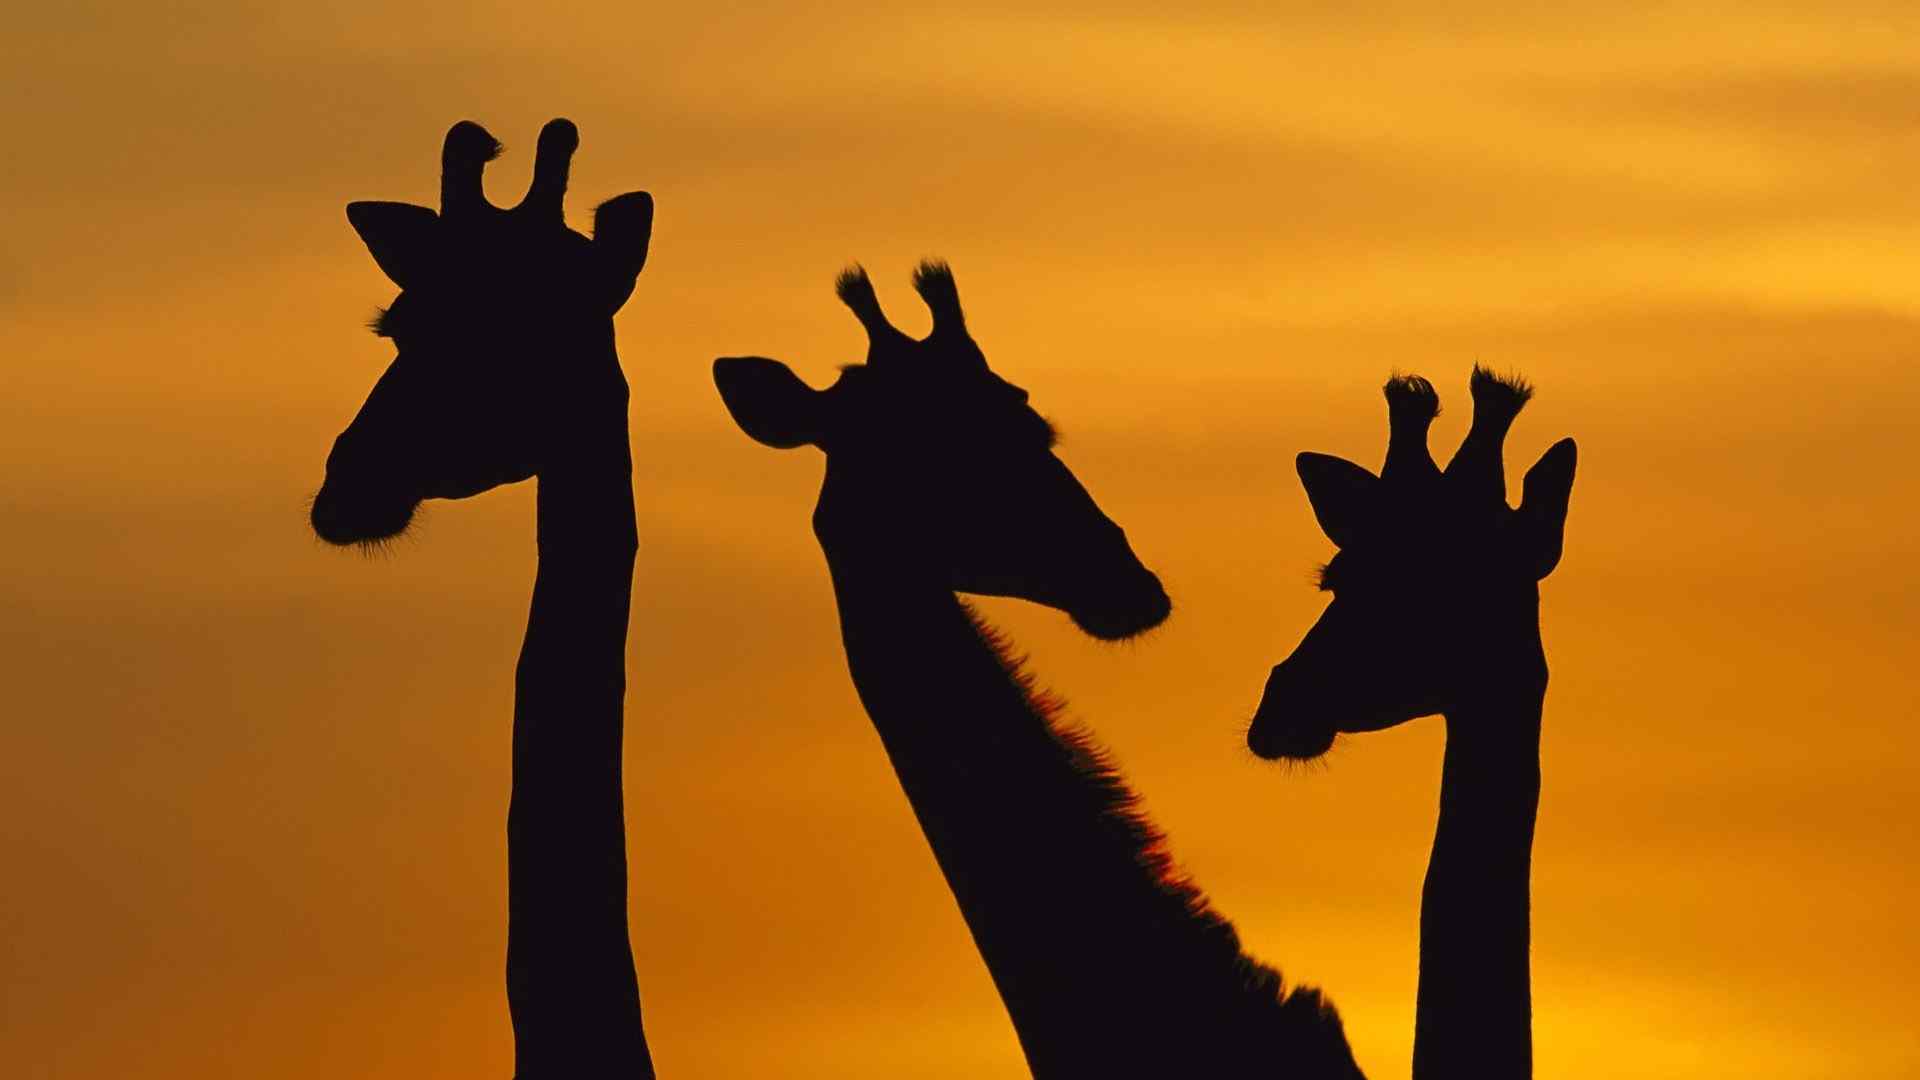 夕阳下的相亲相爱的长颈鹿一家人桌面壁纸